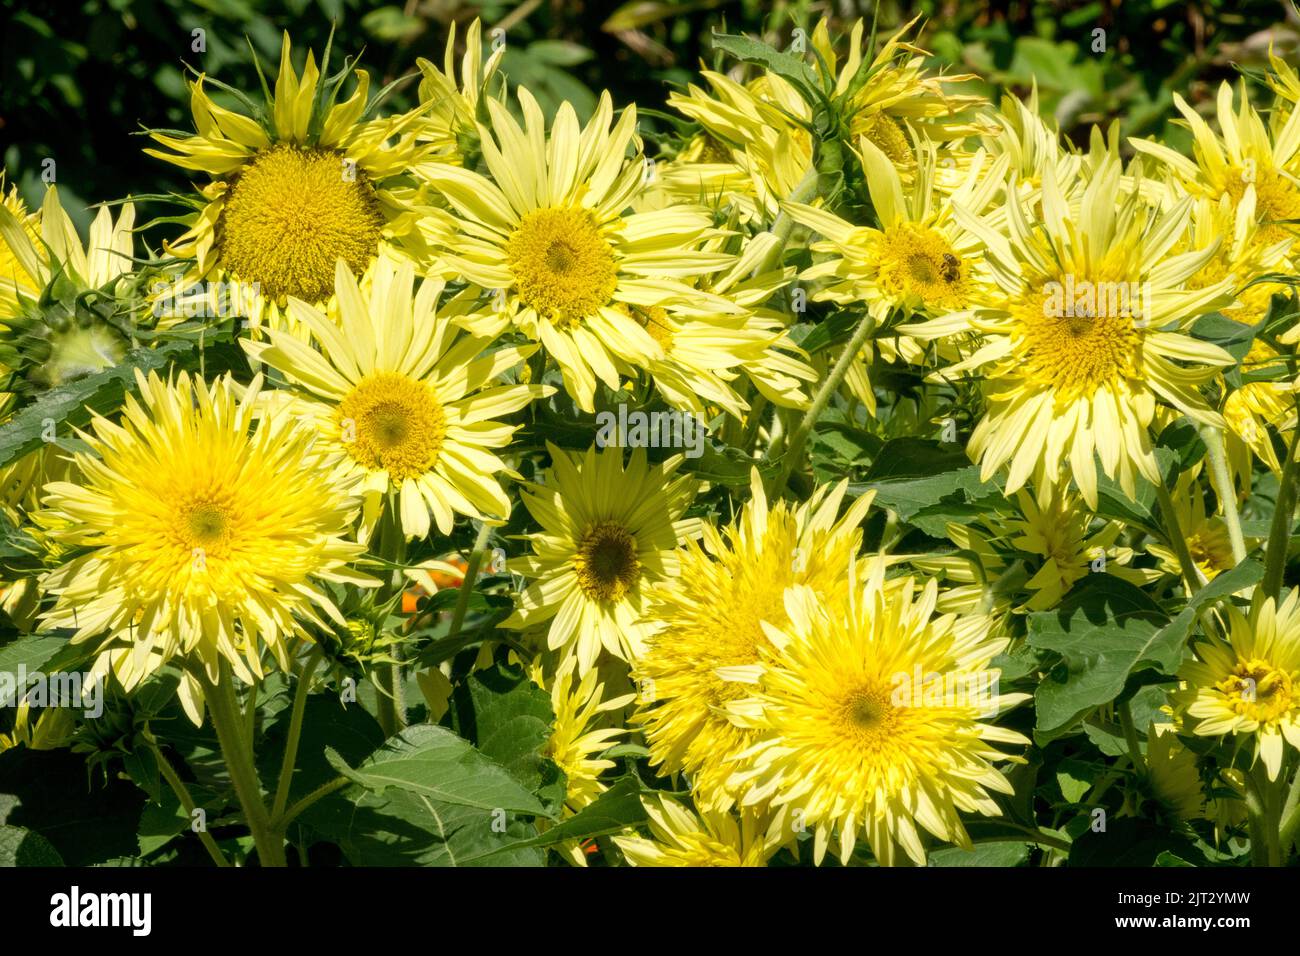 Krautige Garten Sonnenblumen, Helianthus annuus 'Lemon Cutie' Zwergsorte ungewöhnliche halbdoppelte, zitronenfarbene Blüten Stockfoto